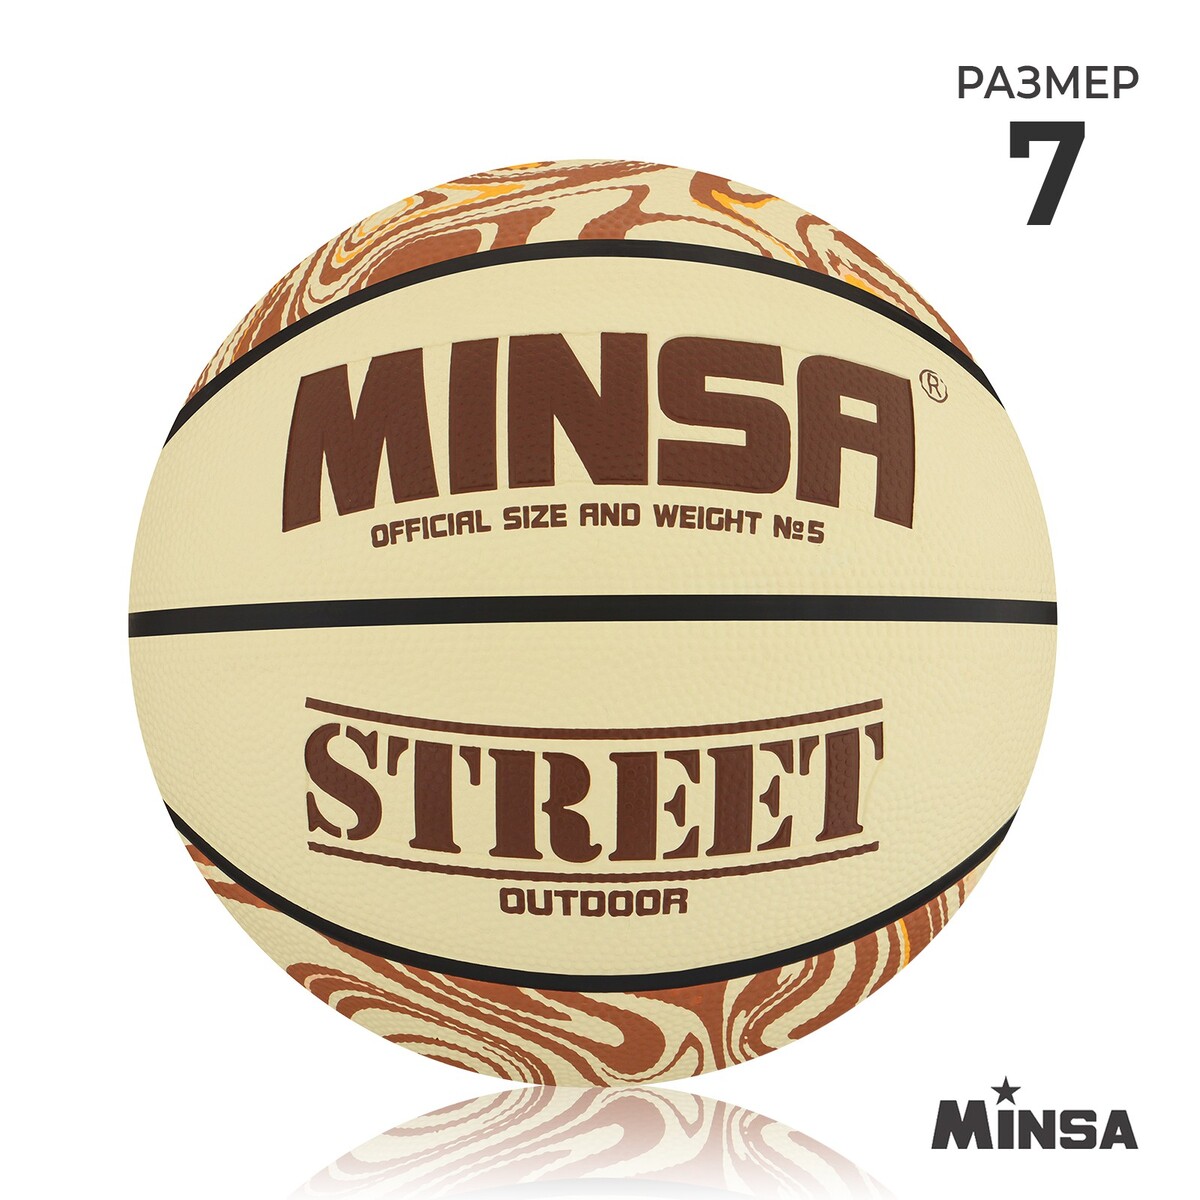 Мяч баскетбольный minsa street, пвх, клееный, 8 панелей, р. 7 мяч баскетбольный minsa street пвх клееный 8 панелей р 7